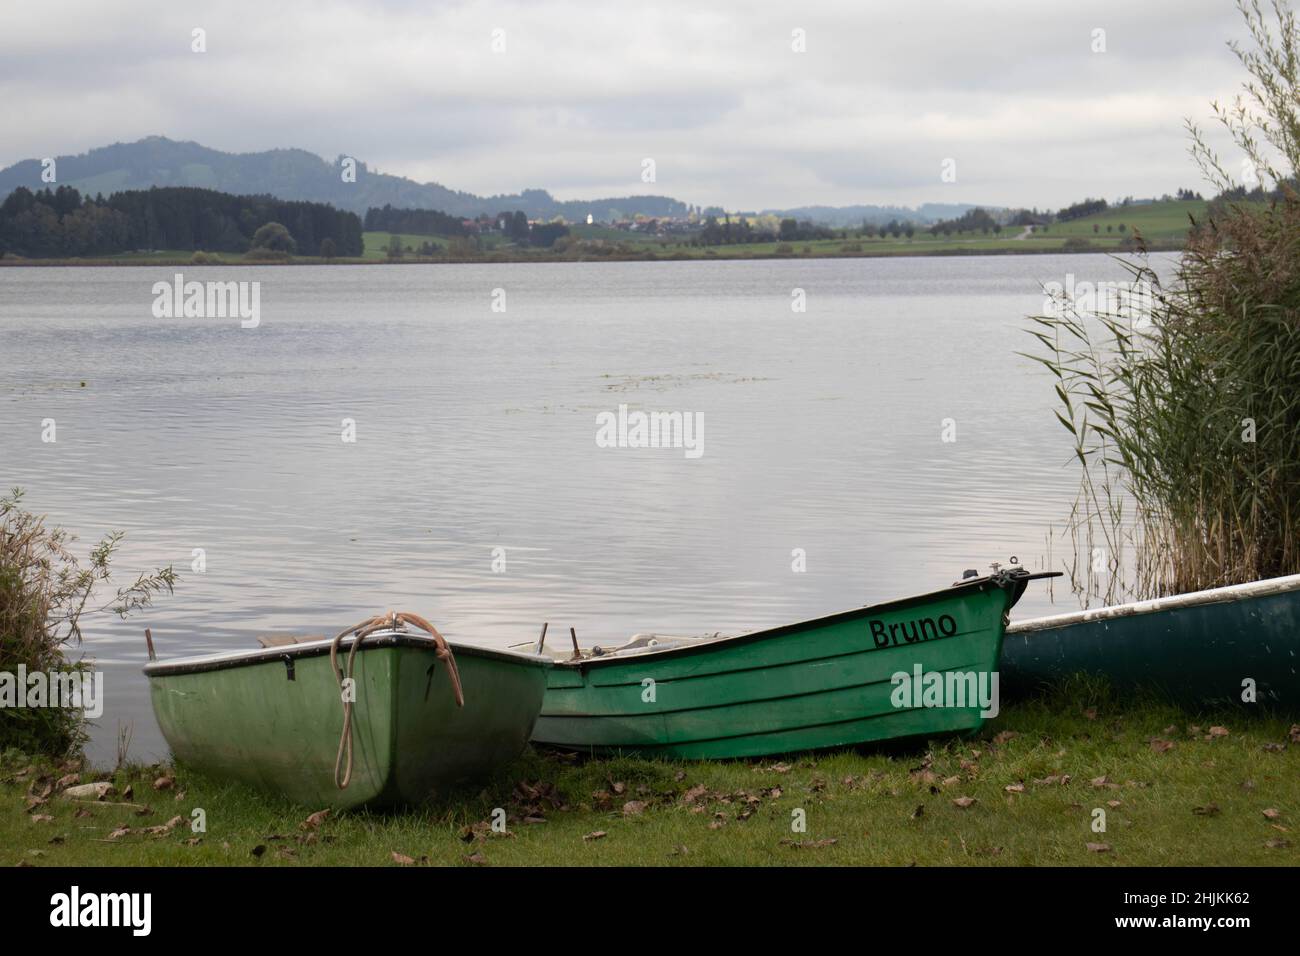 Grüne Ruderboote liegen an Land und warten auf Angler oder Touristen, die auf dem Hopfensee rudern möchten Stock Photo